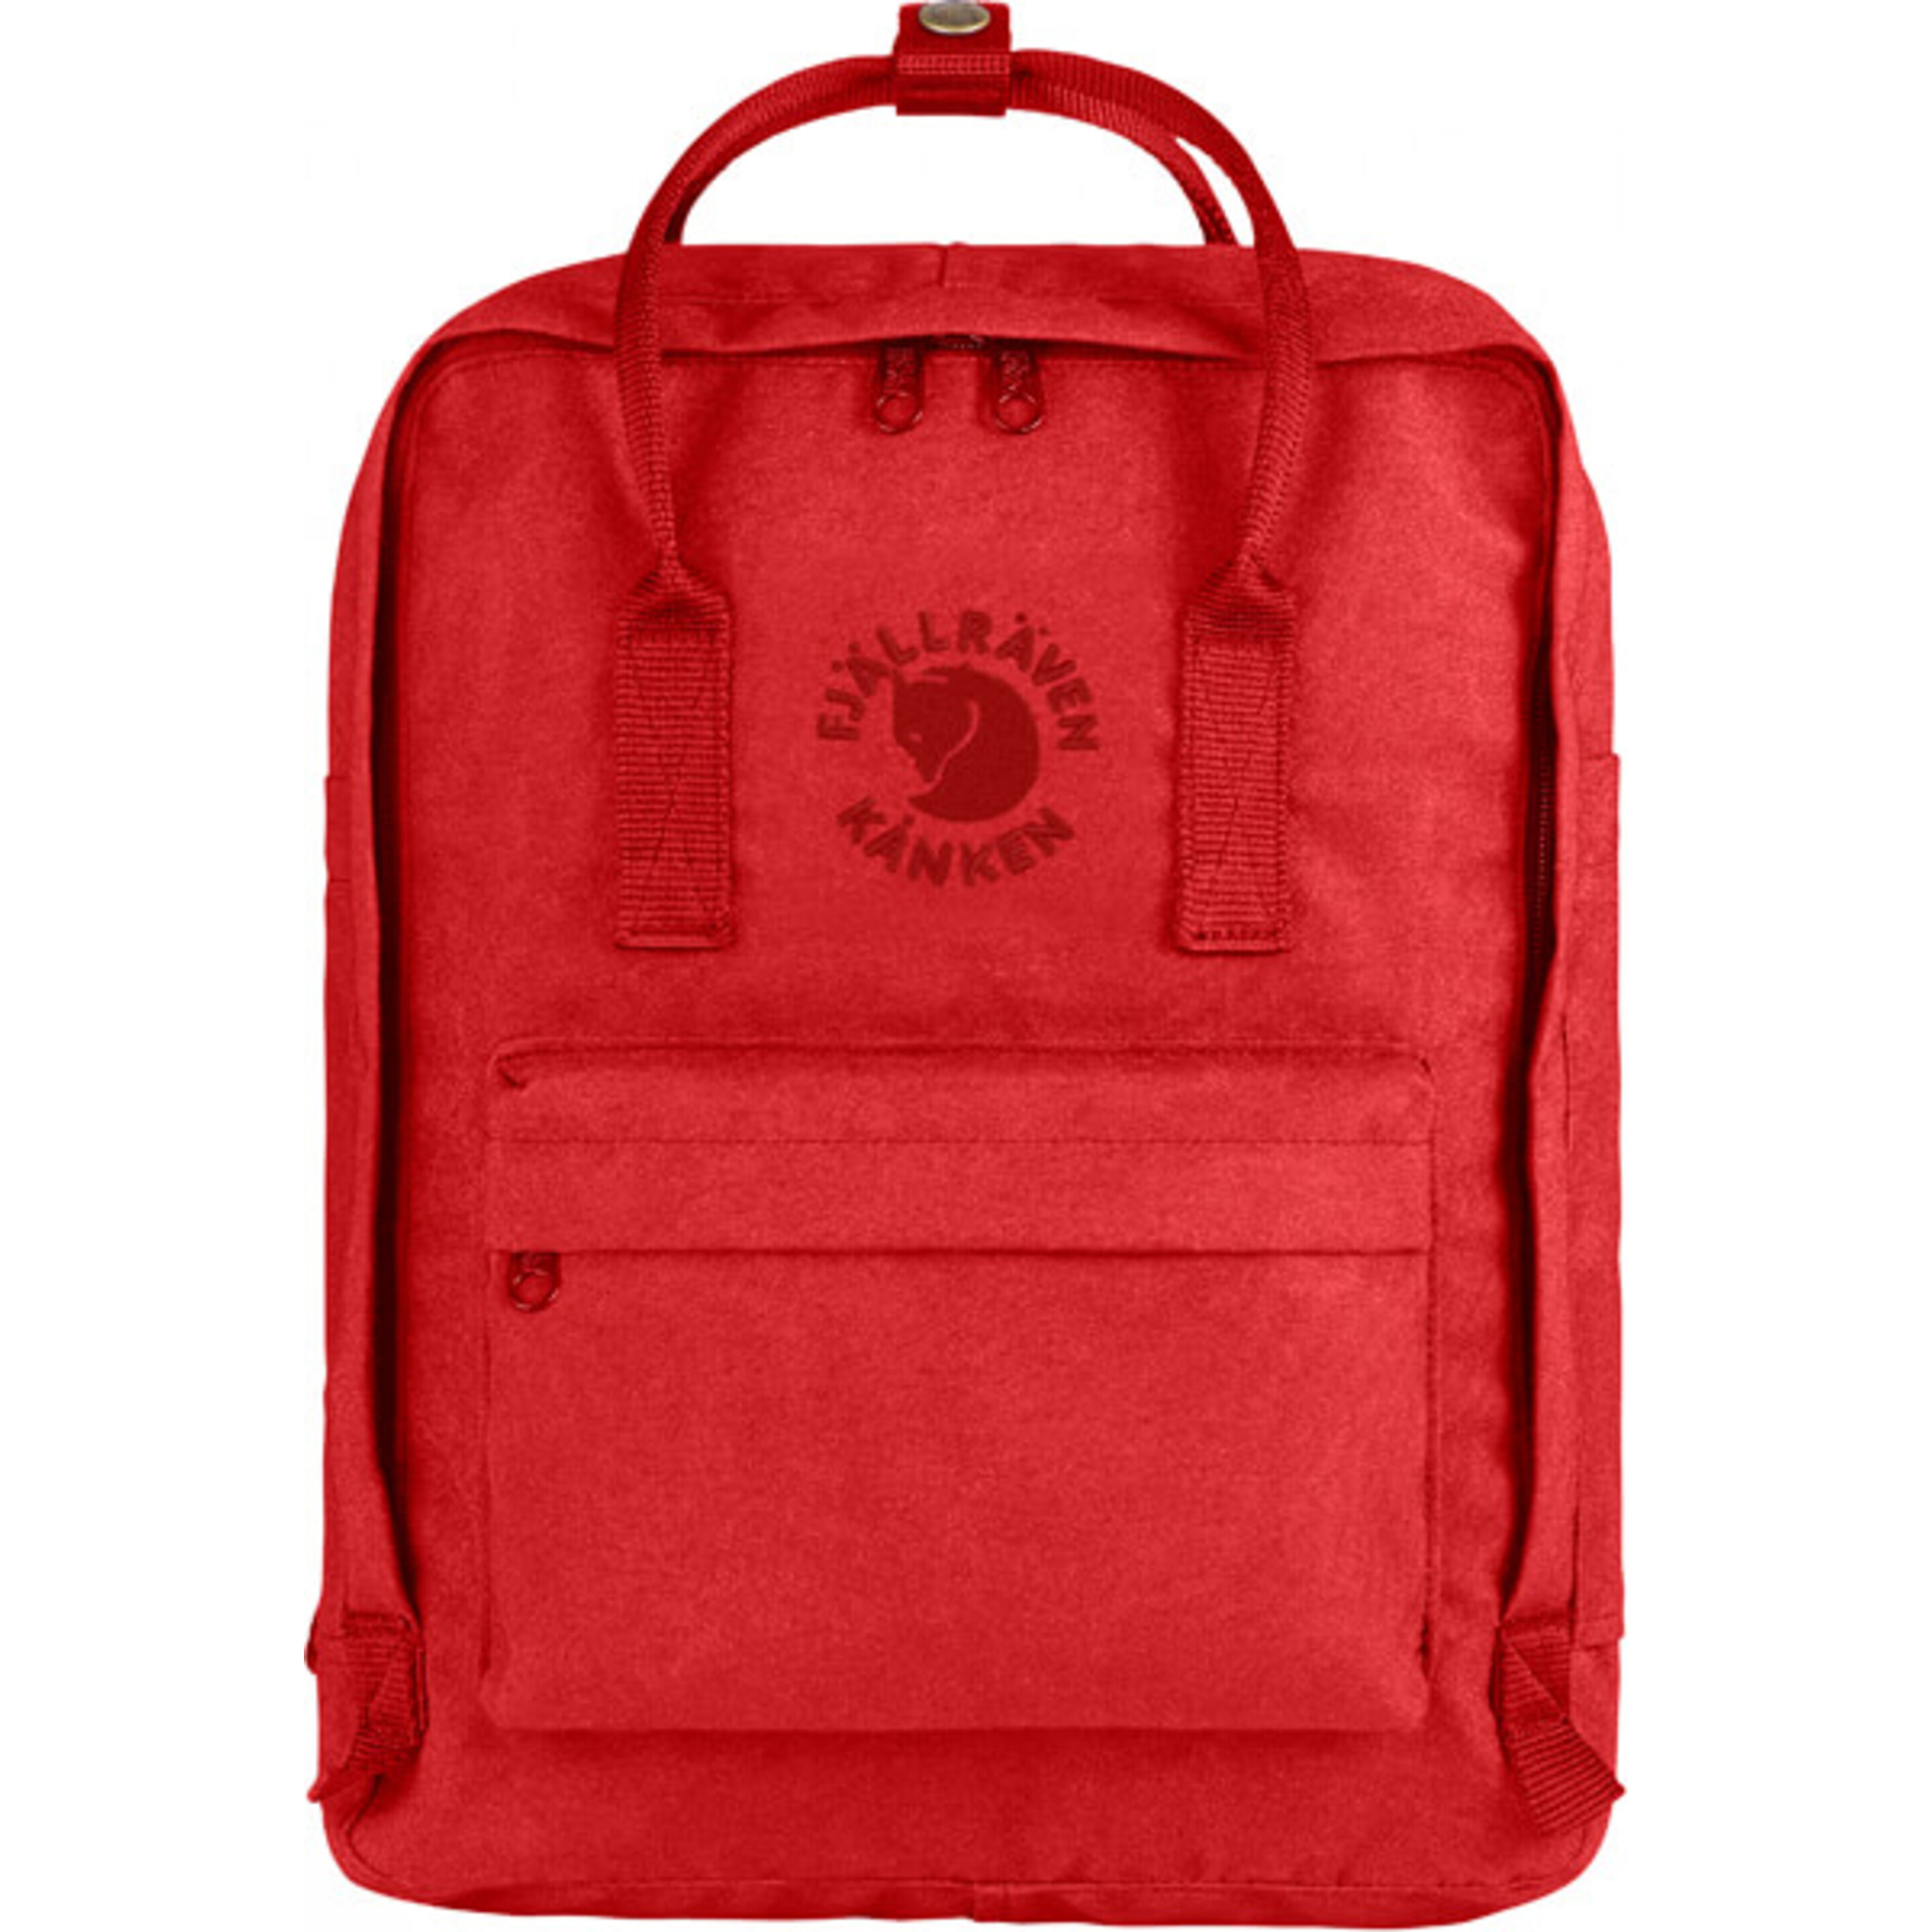 Fjallraven Re-kånken Backpack, Unisex Adulto, Red, Talla única - multicolor - 